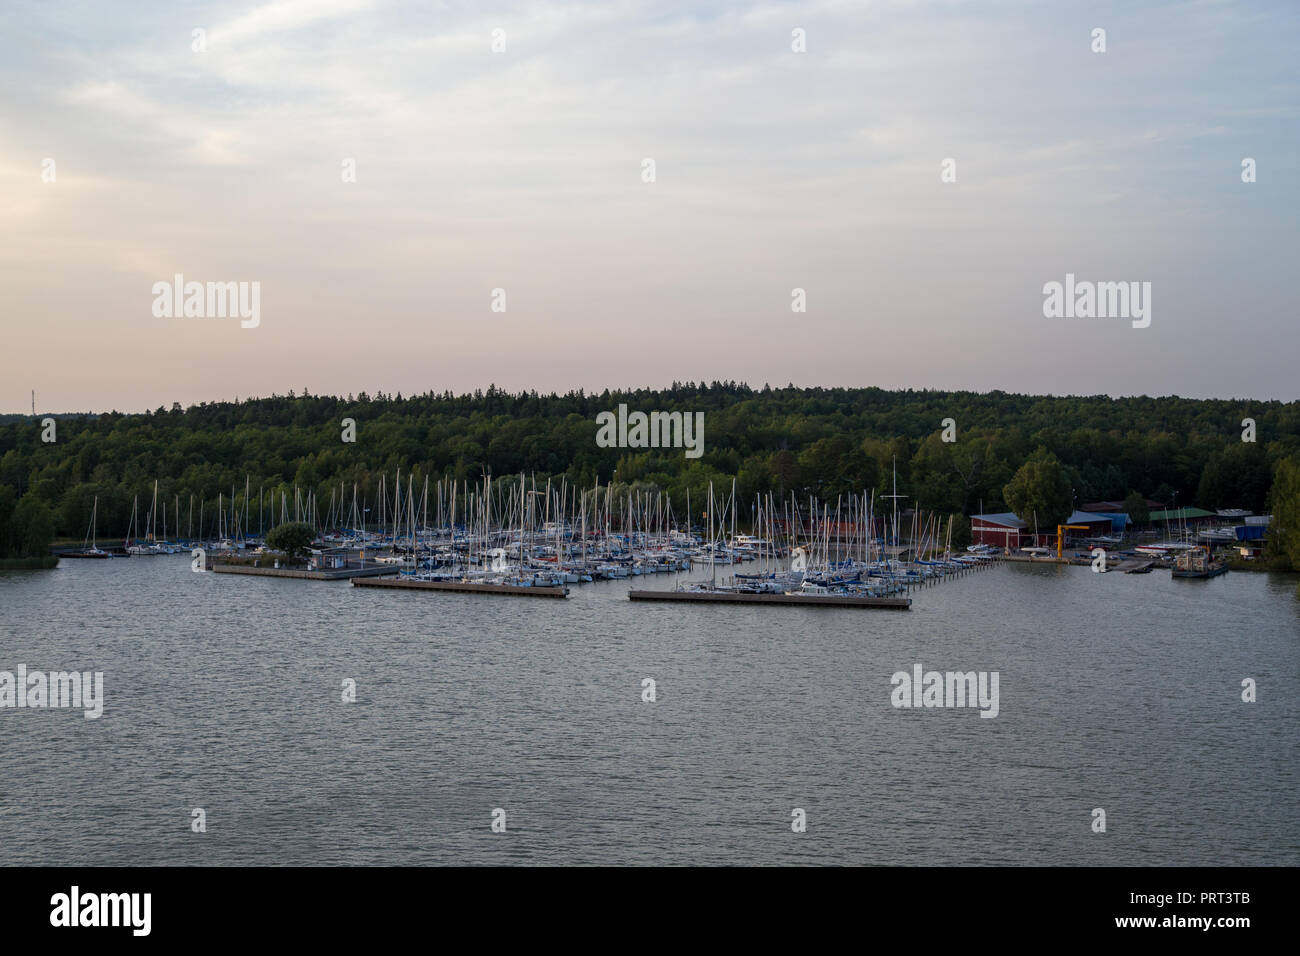 Editorial 08.09.2018 Finlande Turku, bateaux à voile à la marina dans les archipels pier Banque D'Images